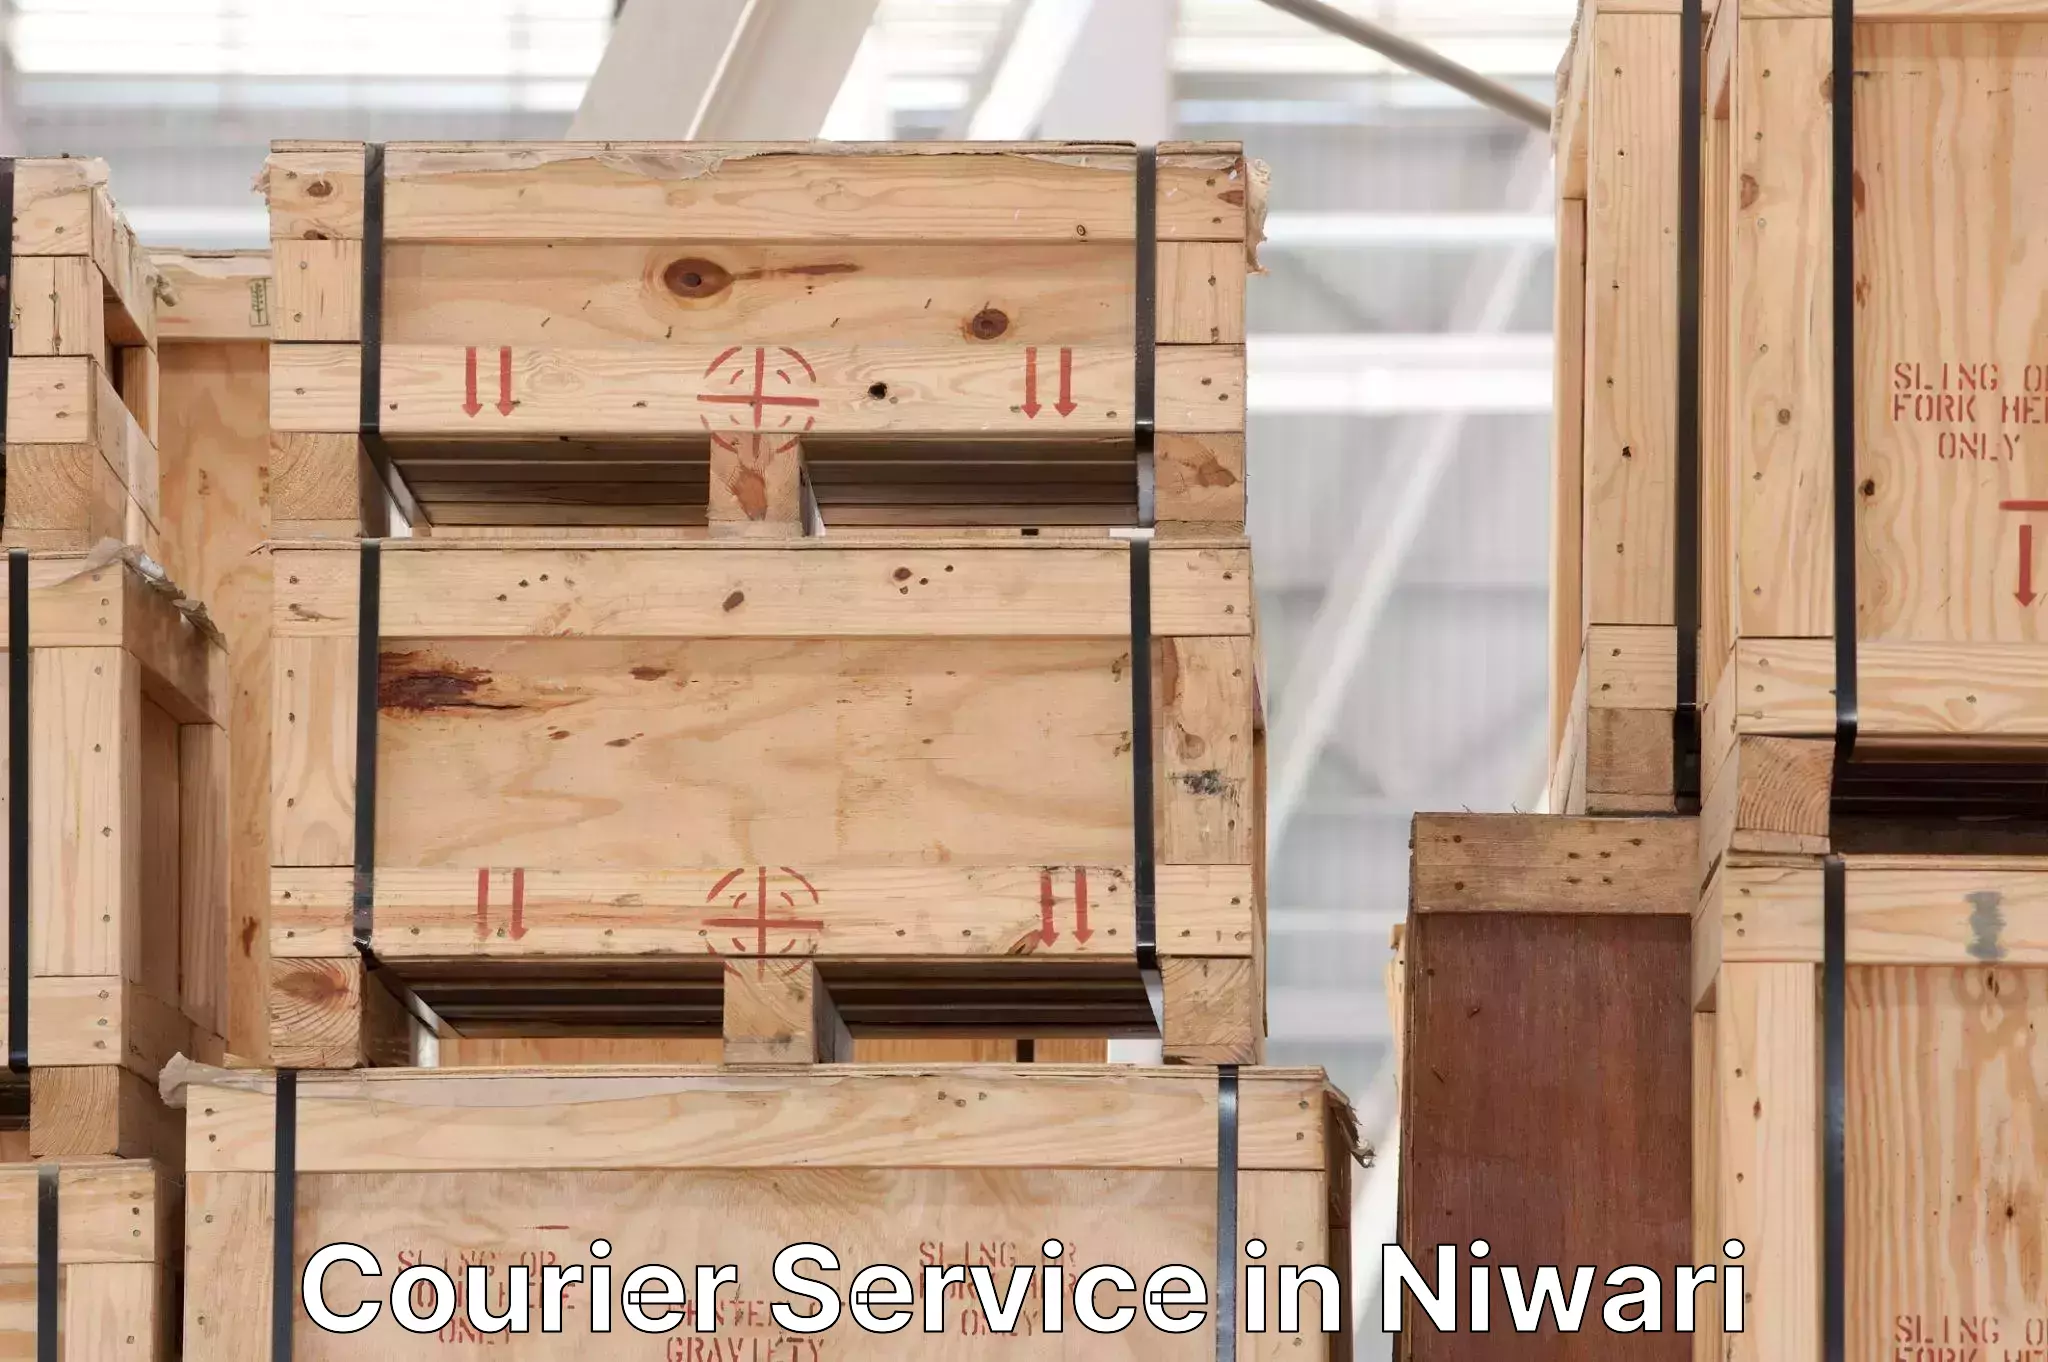 Customizable shipping options in Niwari